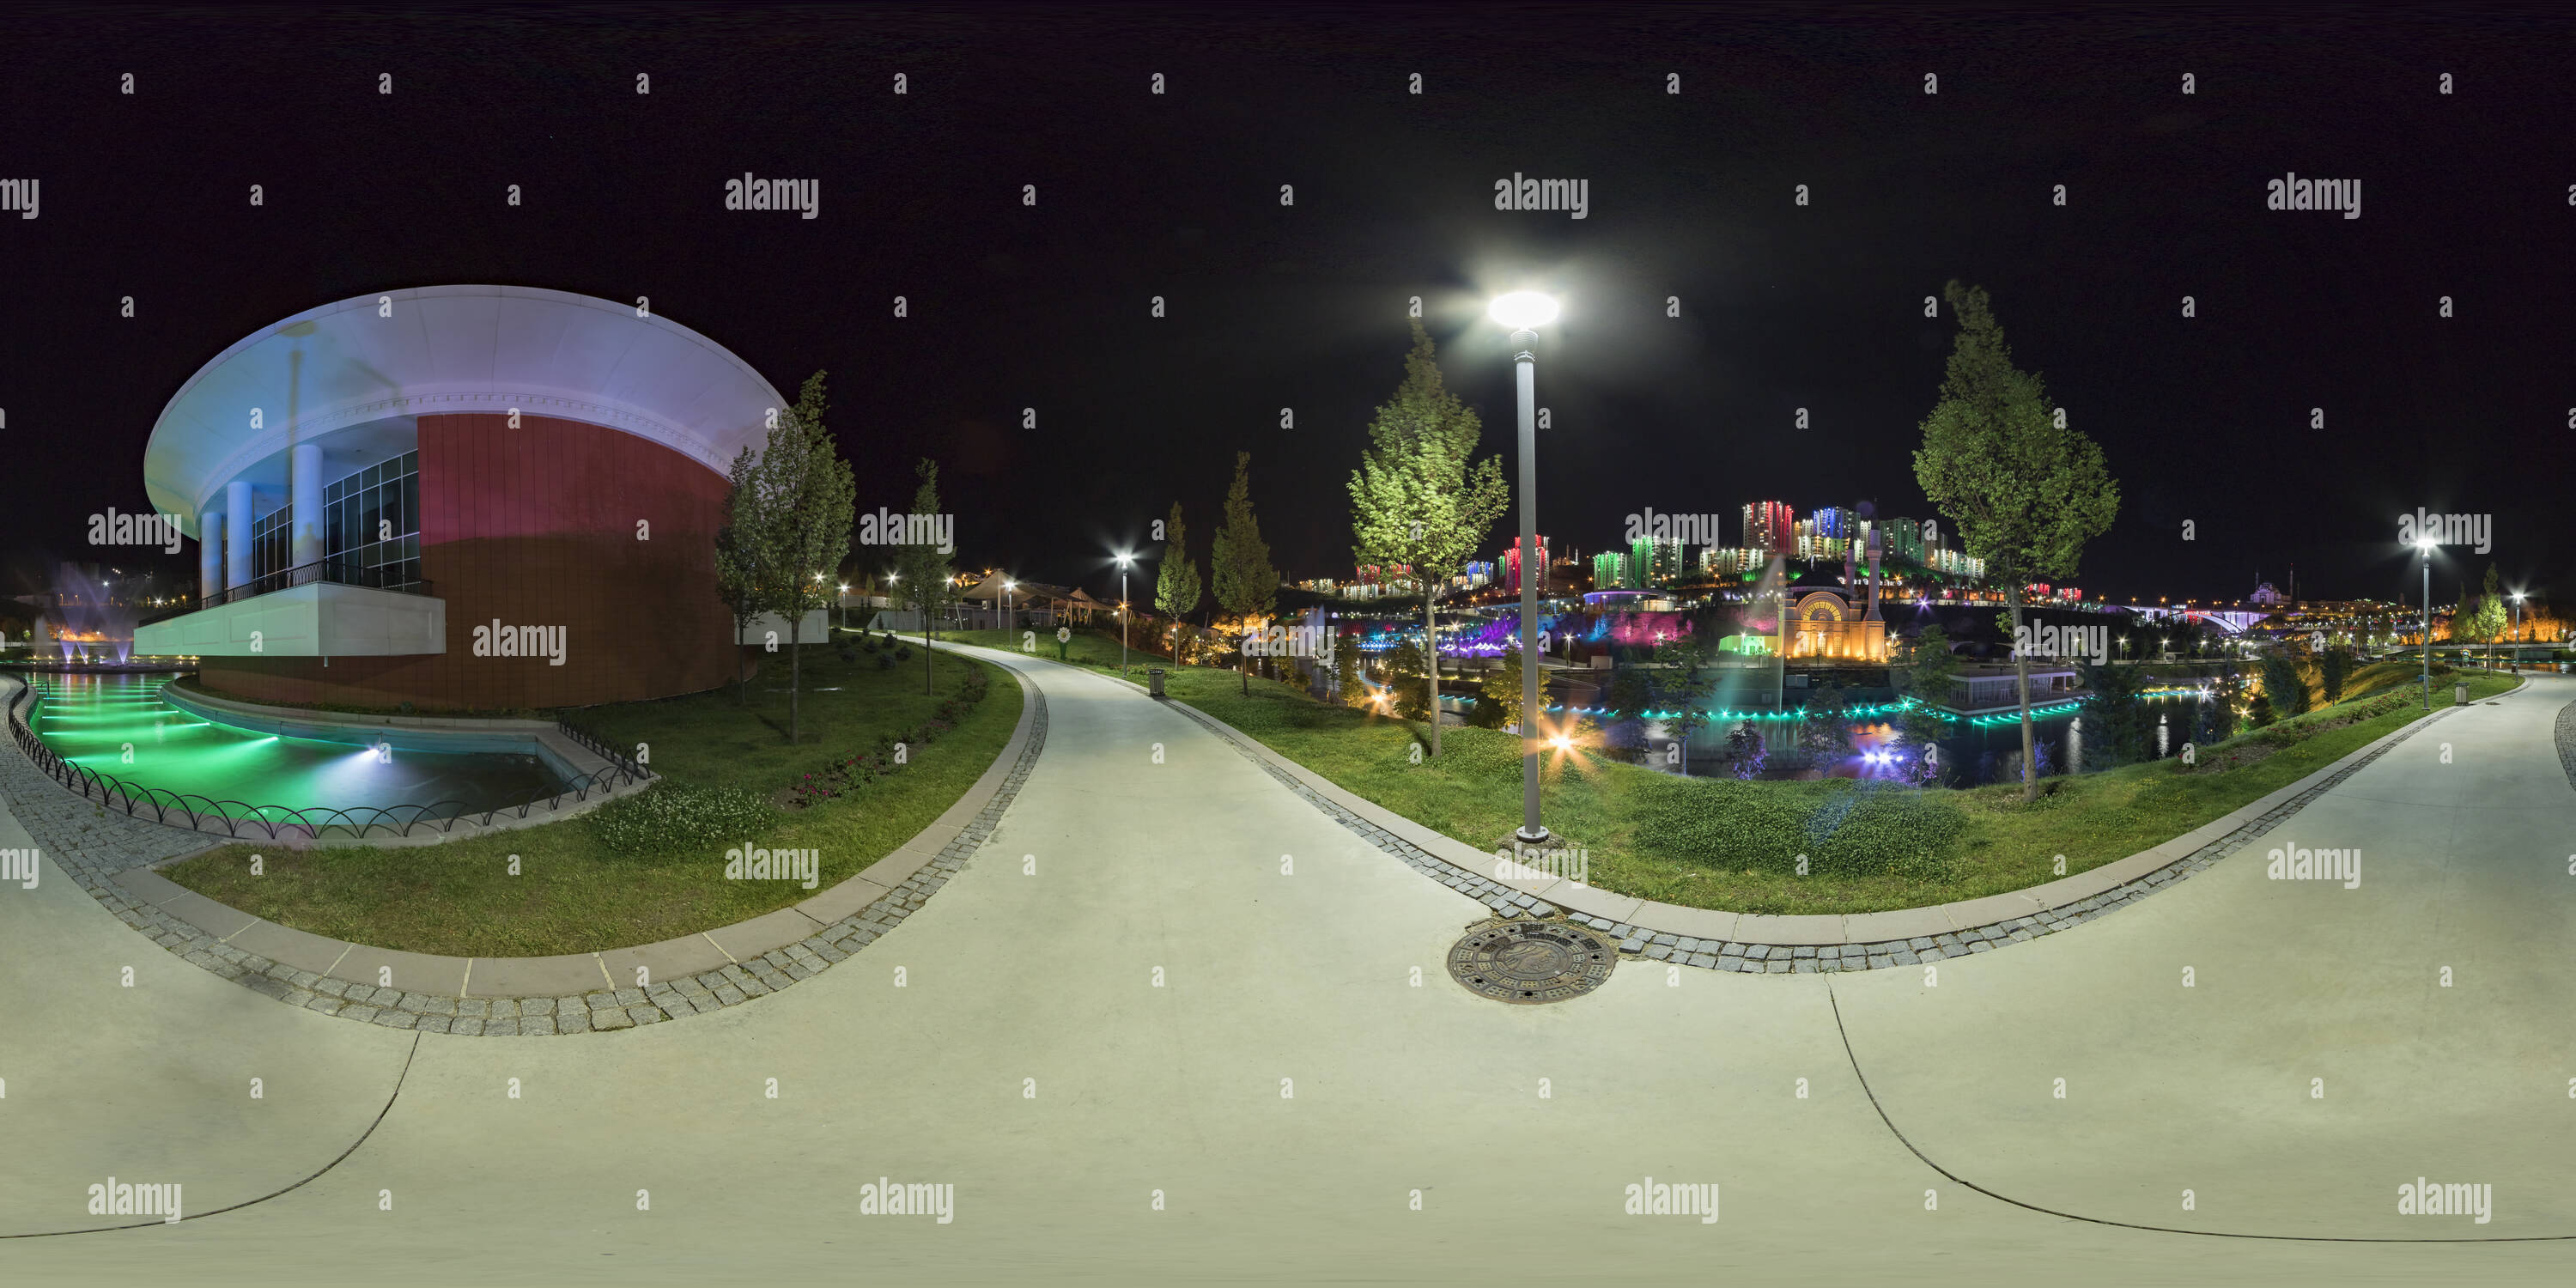 360 degree panoramic view of Kuzey Yildizi Ankara Buyuksehir Belediyesi 20160723 2142 23